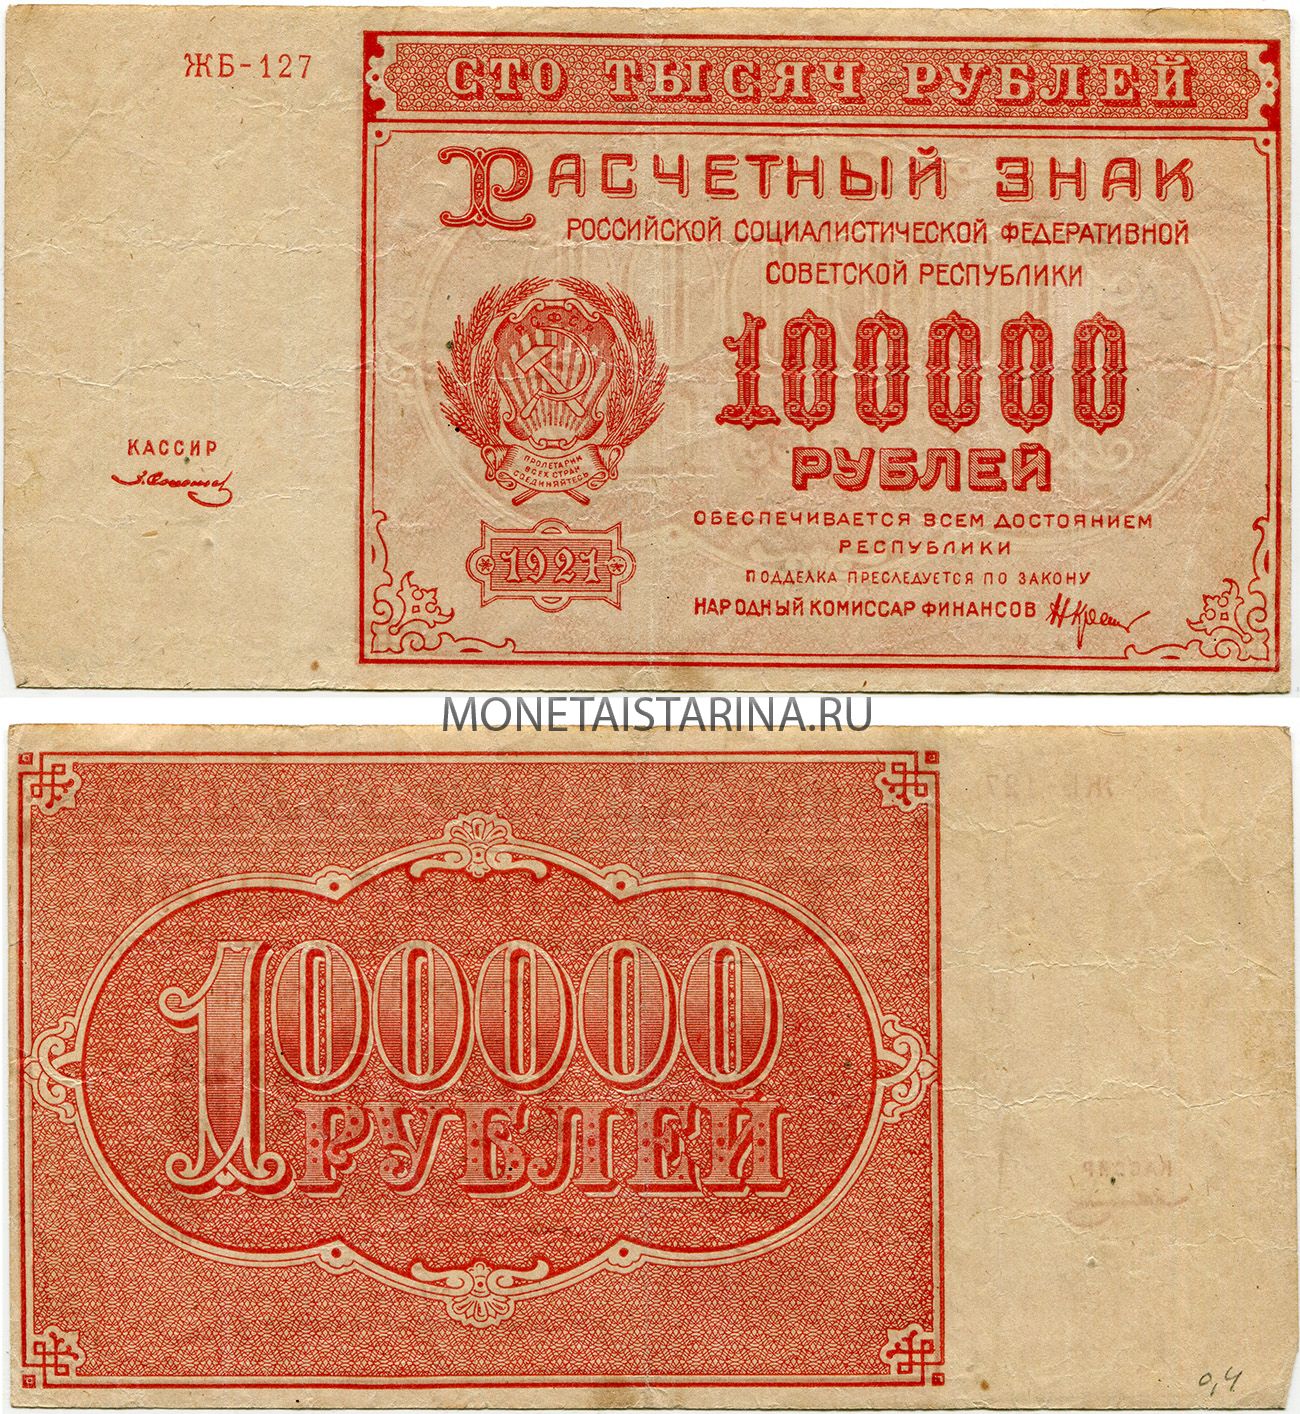 100000 на 1 год. Рубль РСФСР 1921. Банкнота 100000 рублей. 100000 Рублей 1921 года. СТО тысяч рублей банкнота.